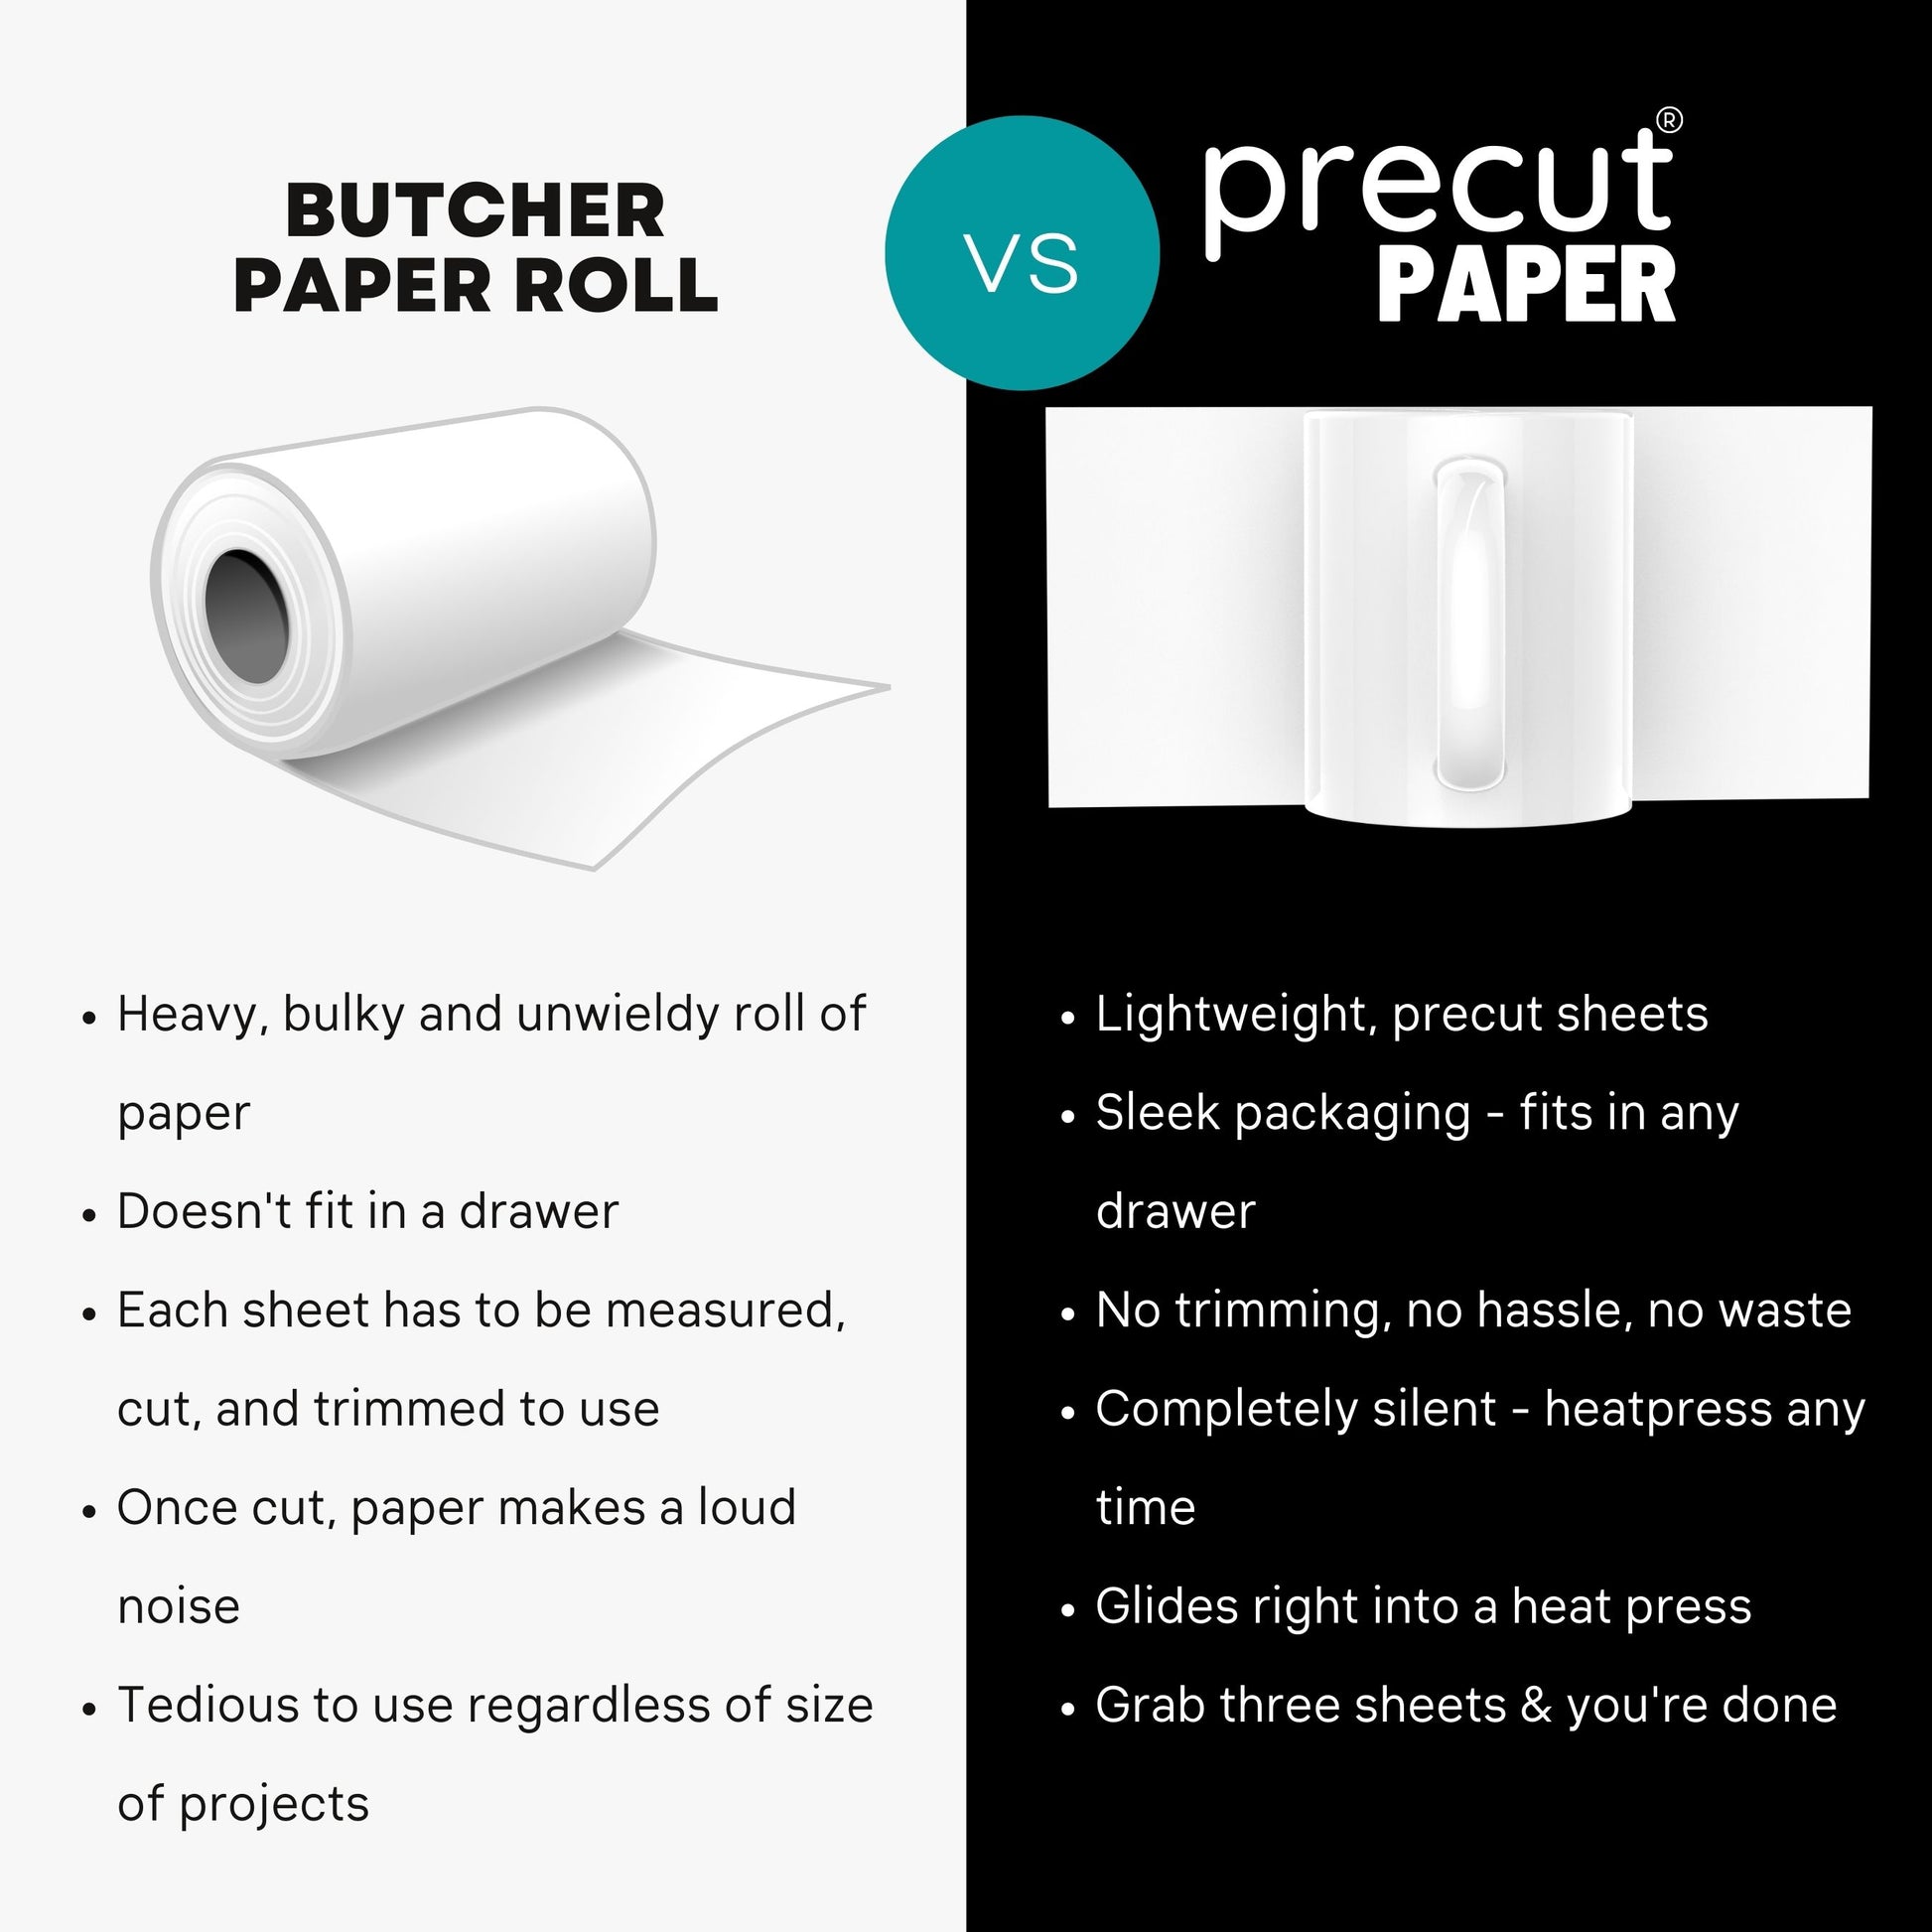 Precut Butcher Paper for Sublimation / Heat Press Crafts – BakeSpace Shop  Events & News